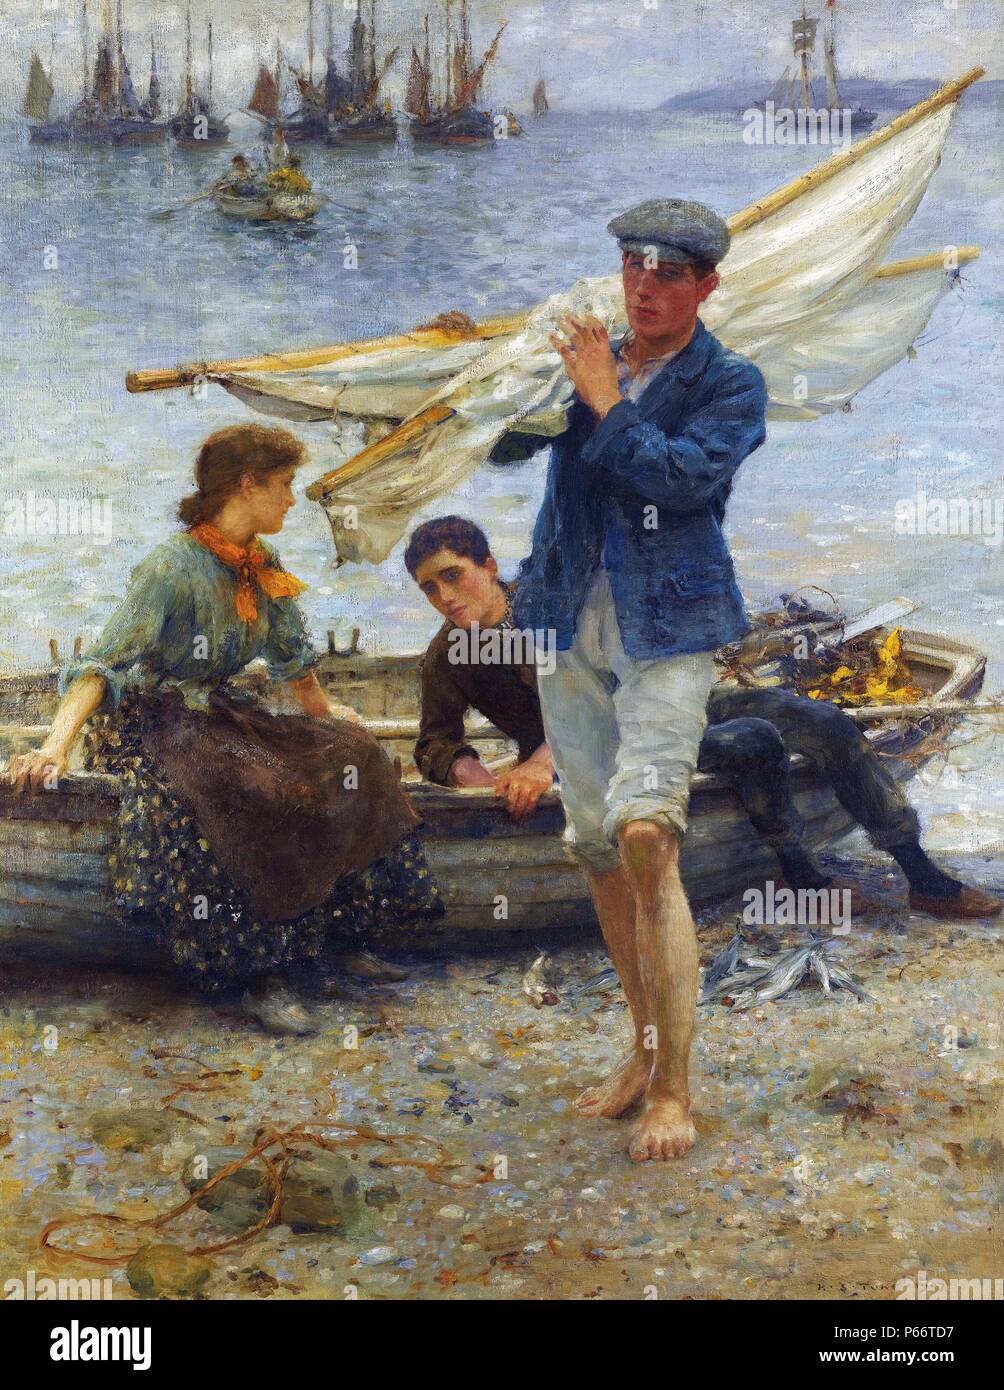 "Rückkehr von der Fischerei" Gemälde von Henry Scott Tuke, (1858-1929), englischer Maler und Fotograf. Seine wichtigste Arbeit war im impressionistischen Stil, der für seine Gemälde von jungen Männern bekannt. 1907 Stockfoto